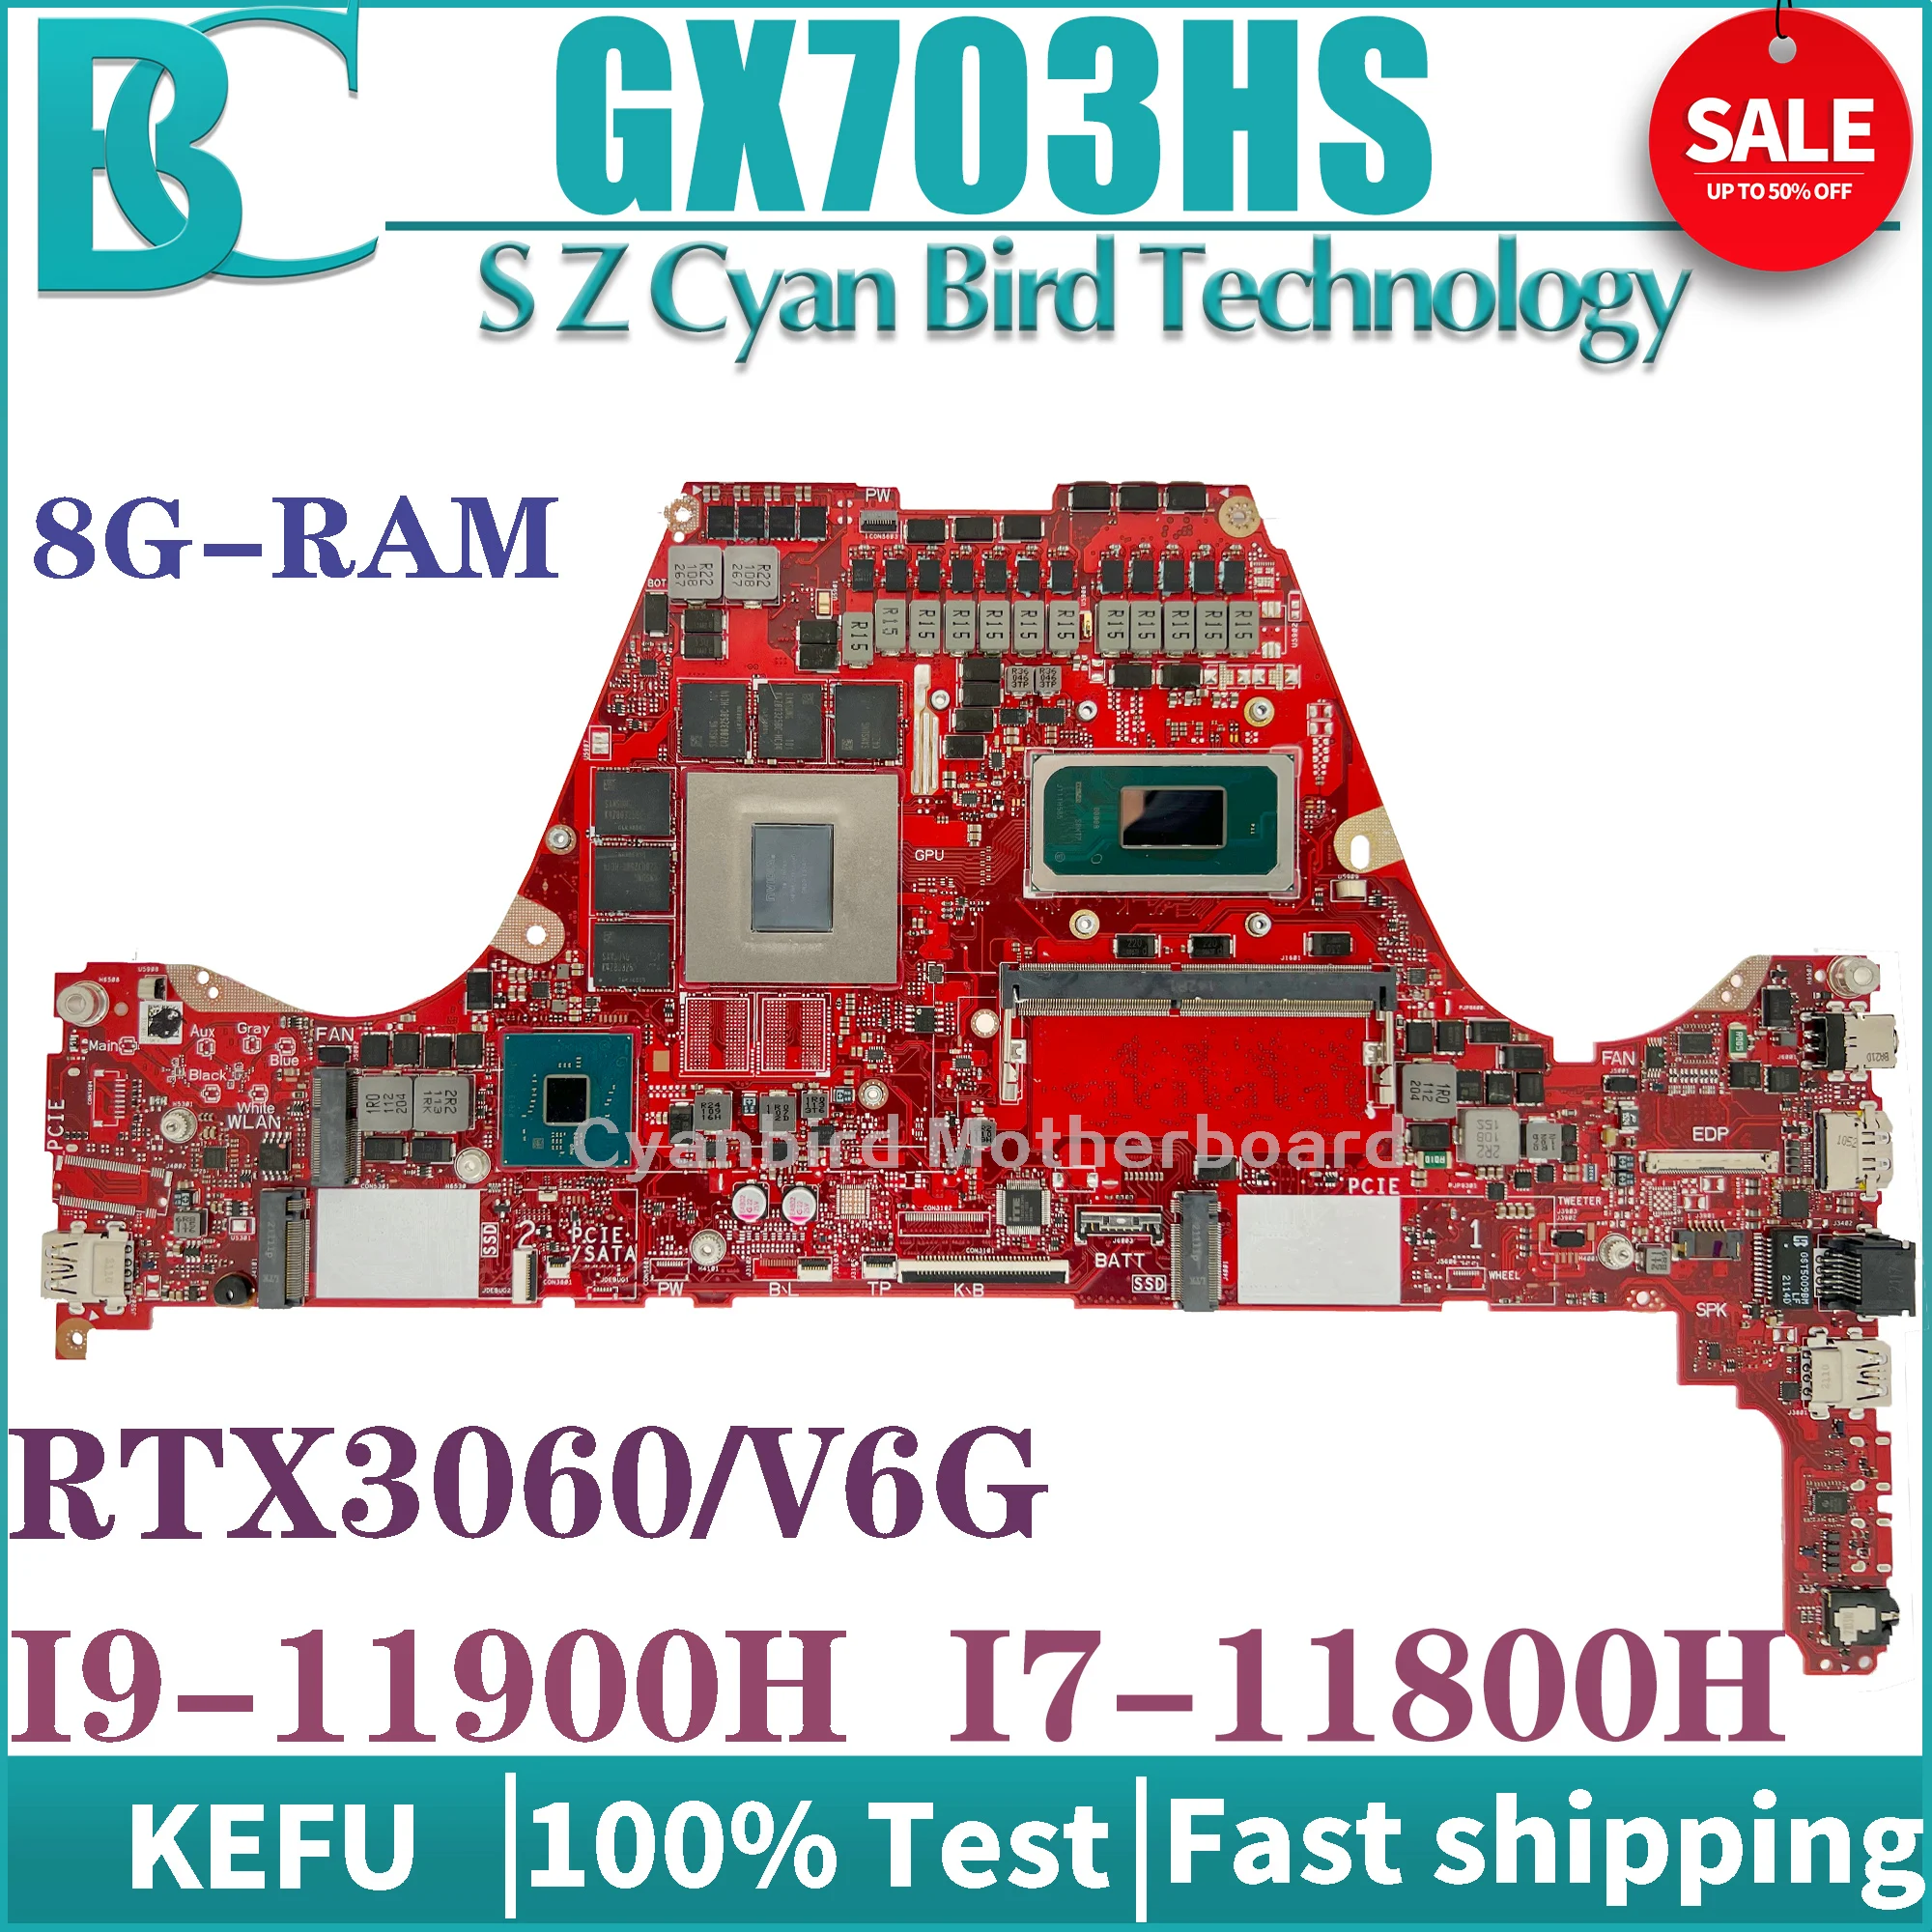 

KEFU GX703HS Mainboard I7-11800H I9-11900H RTX3060-V6G 8GB-RAM 16GB-RAM For ASUS ROG Zephyrus GX703 Laptop Motherboard 100% Test